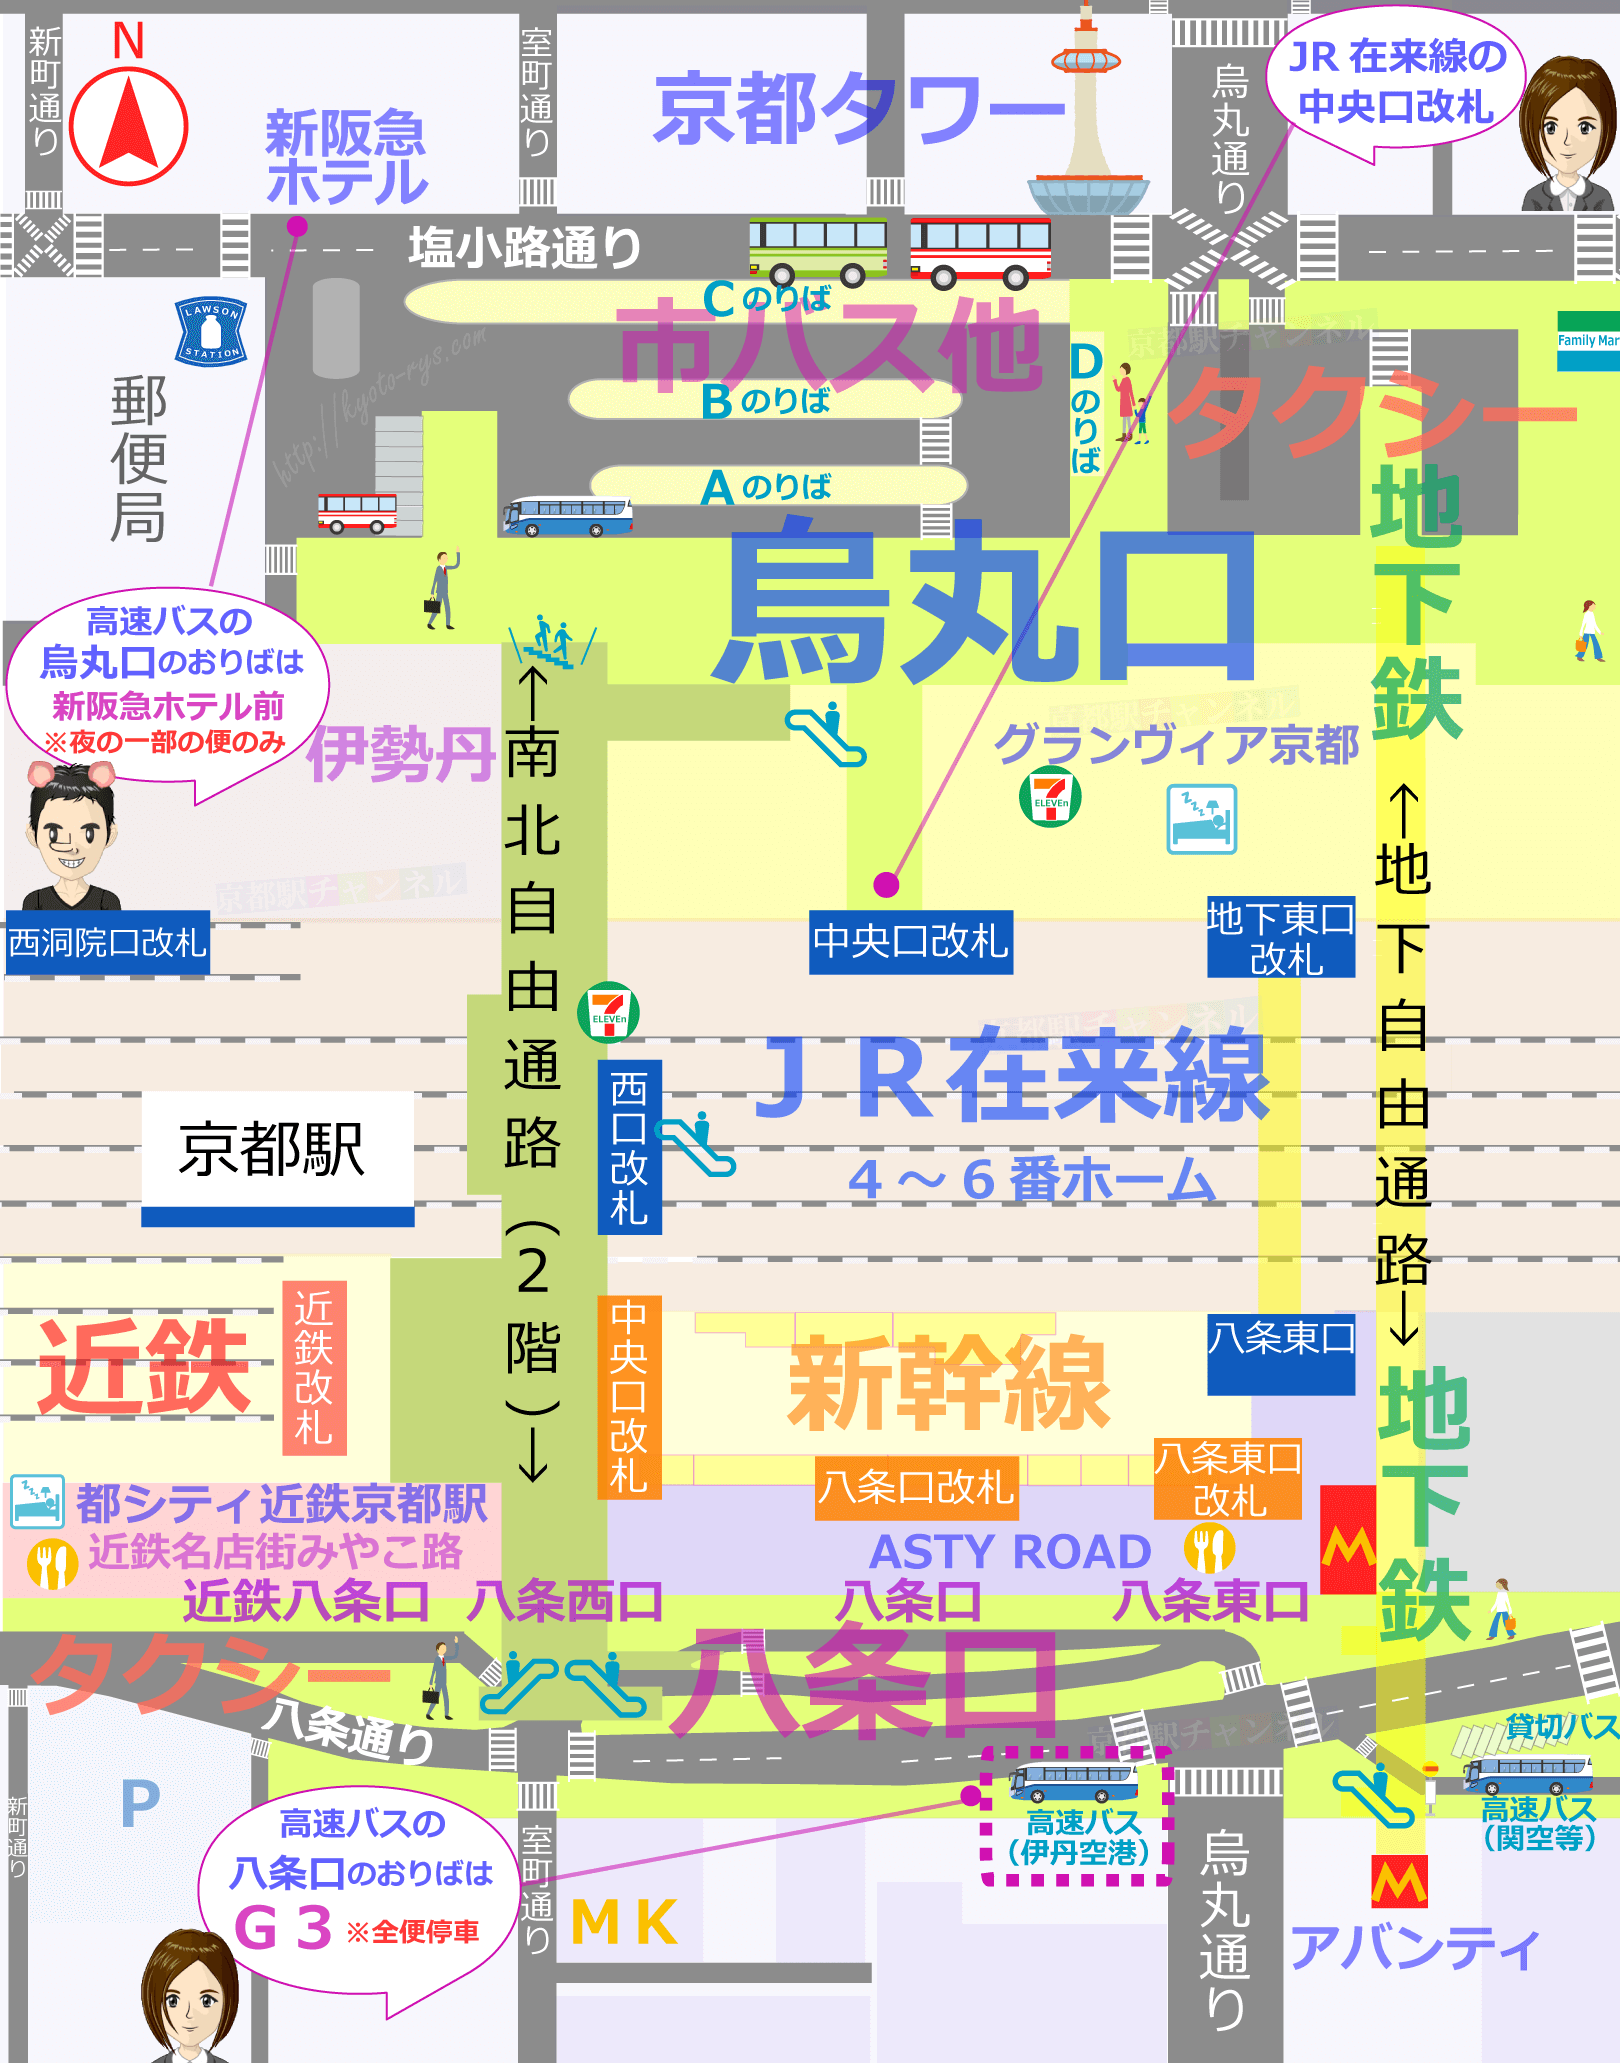 伊丹空港から京都行きの高速バスのおりばマップ